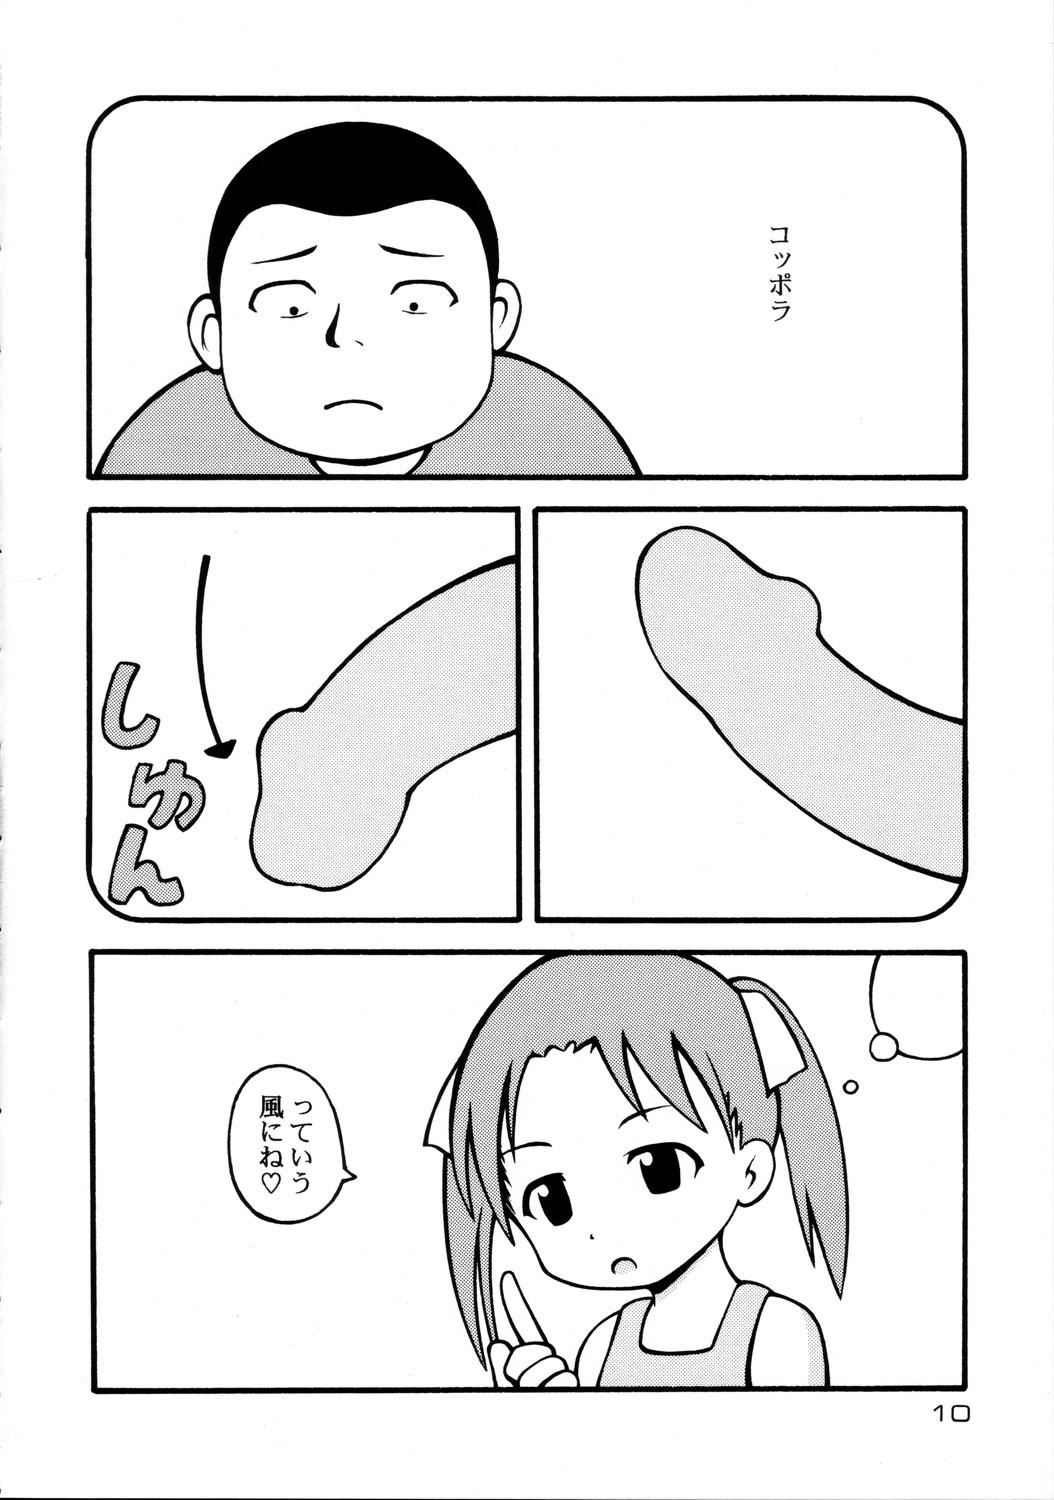 Tight Ass Sorairo Mashimaro - Ichigo mashimaro Culonas - Page 10